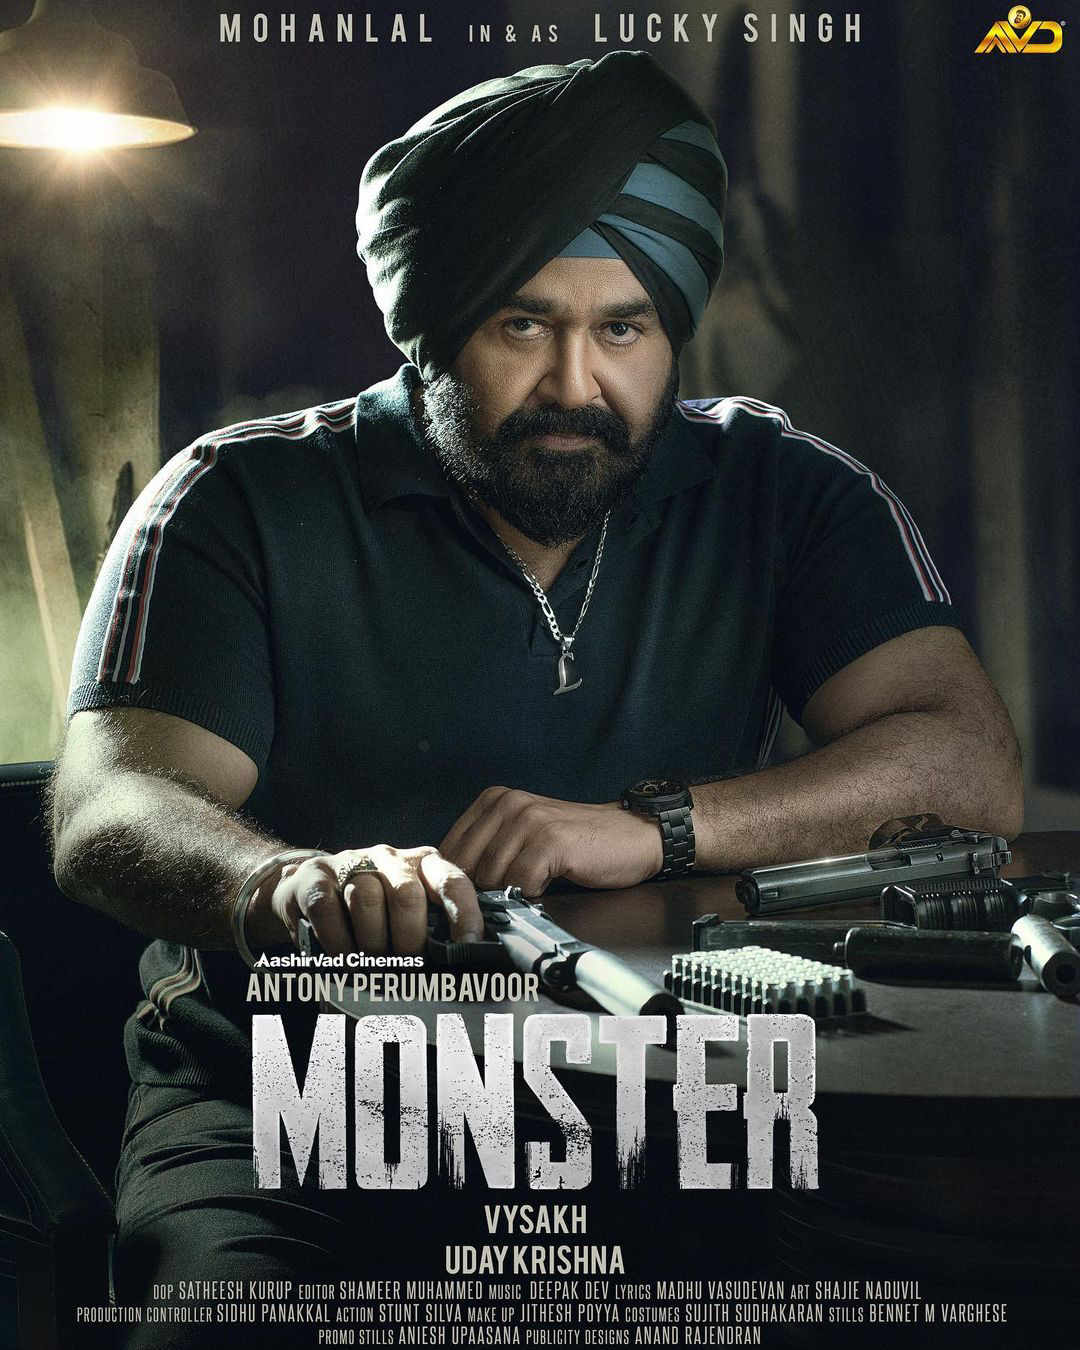 Monster mohanlal movie